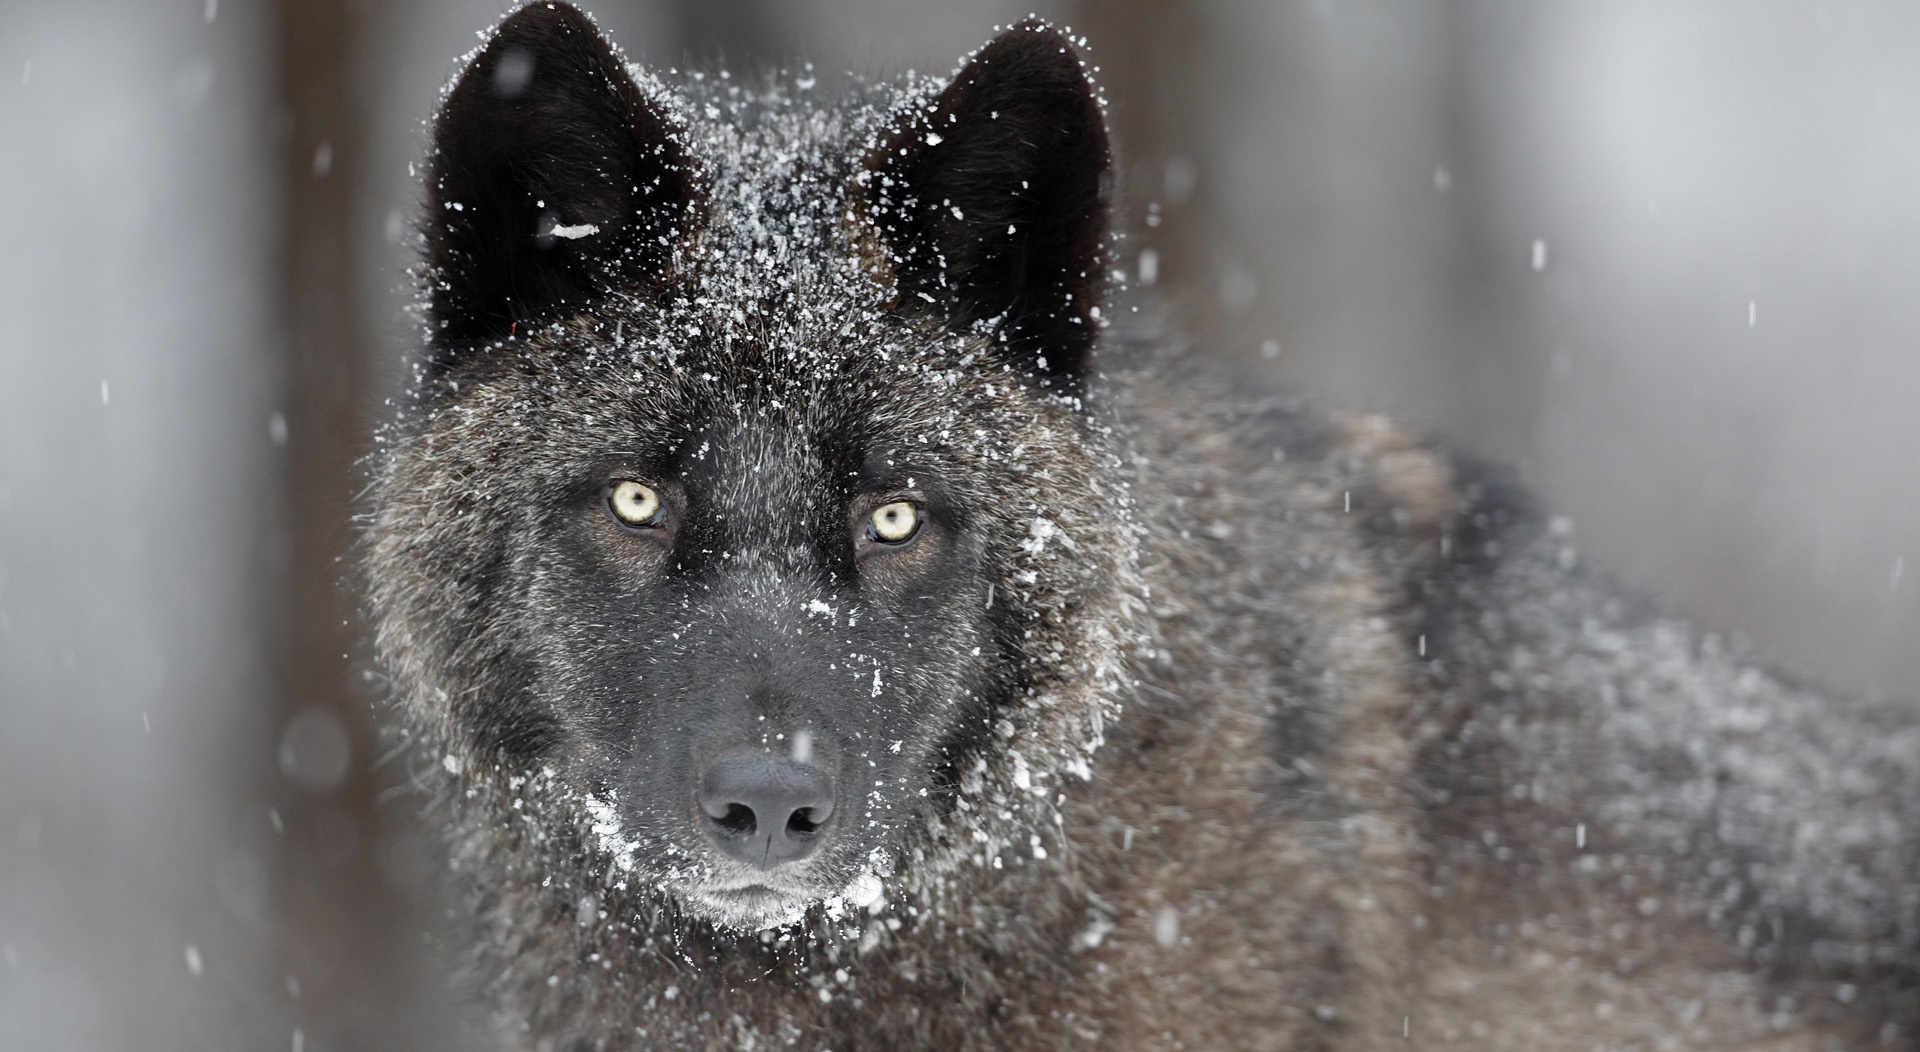 黑色背景的黑狼肖像 库存照片. 图片 包括有 题头, 自然, 表面, 食肉动物, 狼疮, 猎人, 图画 - 202381132